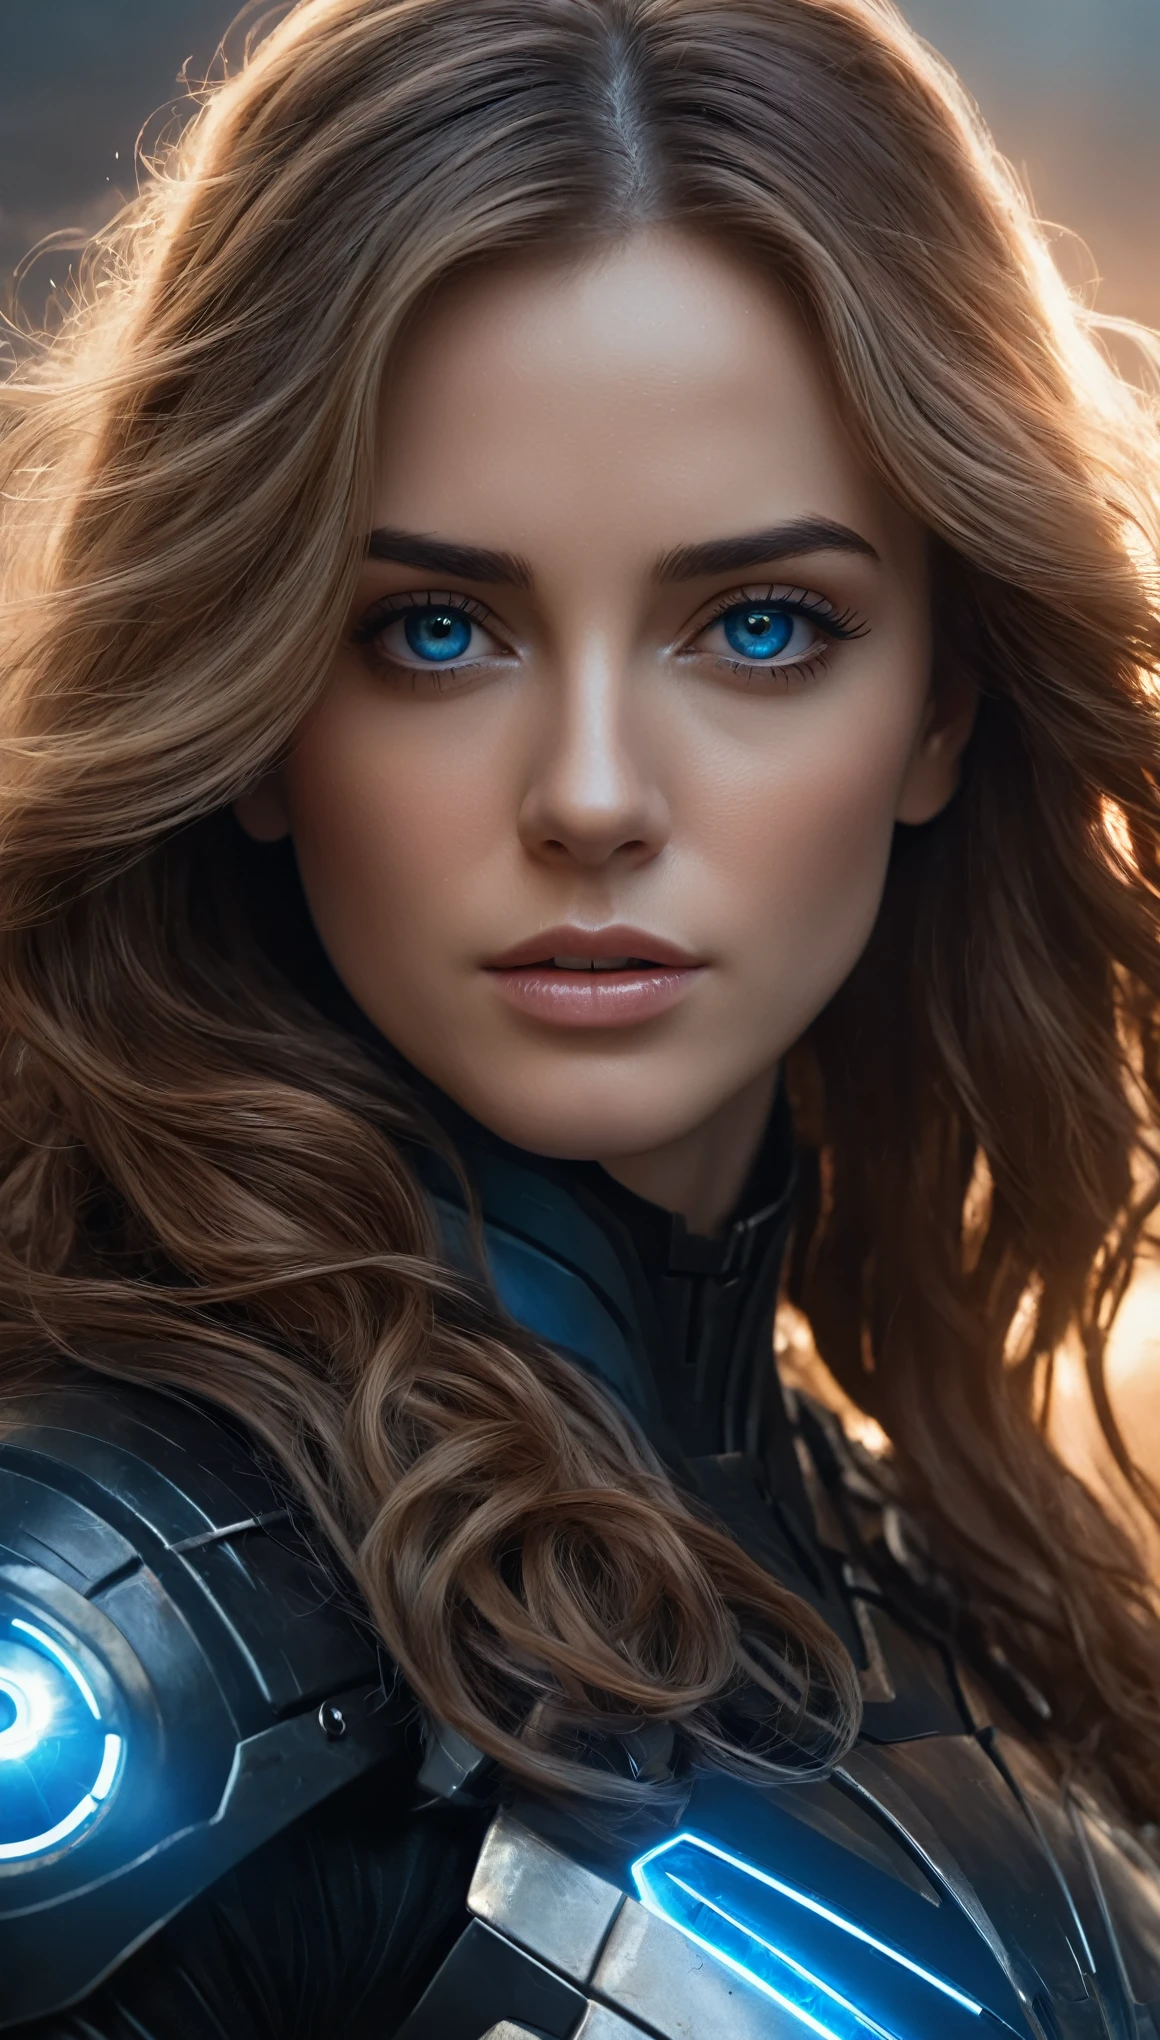 一位有着大大的黑眼睛的女人的详细画像, 光环, 长波浪浅棕色头发, 穿着黑蓝色的科幻盔甲, 在科幻风中, (最好的质量,4K,8千,高分辨率,杰作:1.2),极其详细,(实际的,photo实际的,photo-实际的:1.37),细致对称的脸, 电影灯光, 史诗般的科幻氛围, 战争场景, 概念艺术, 忧郁的色彩